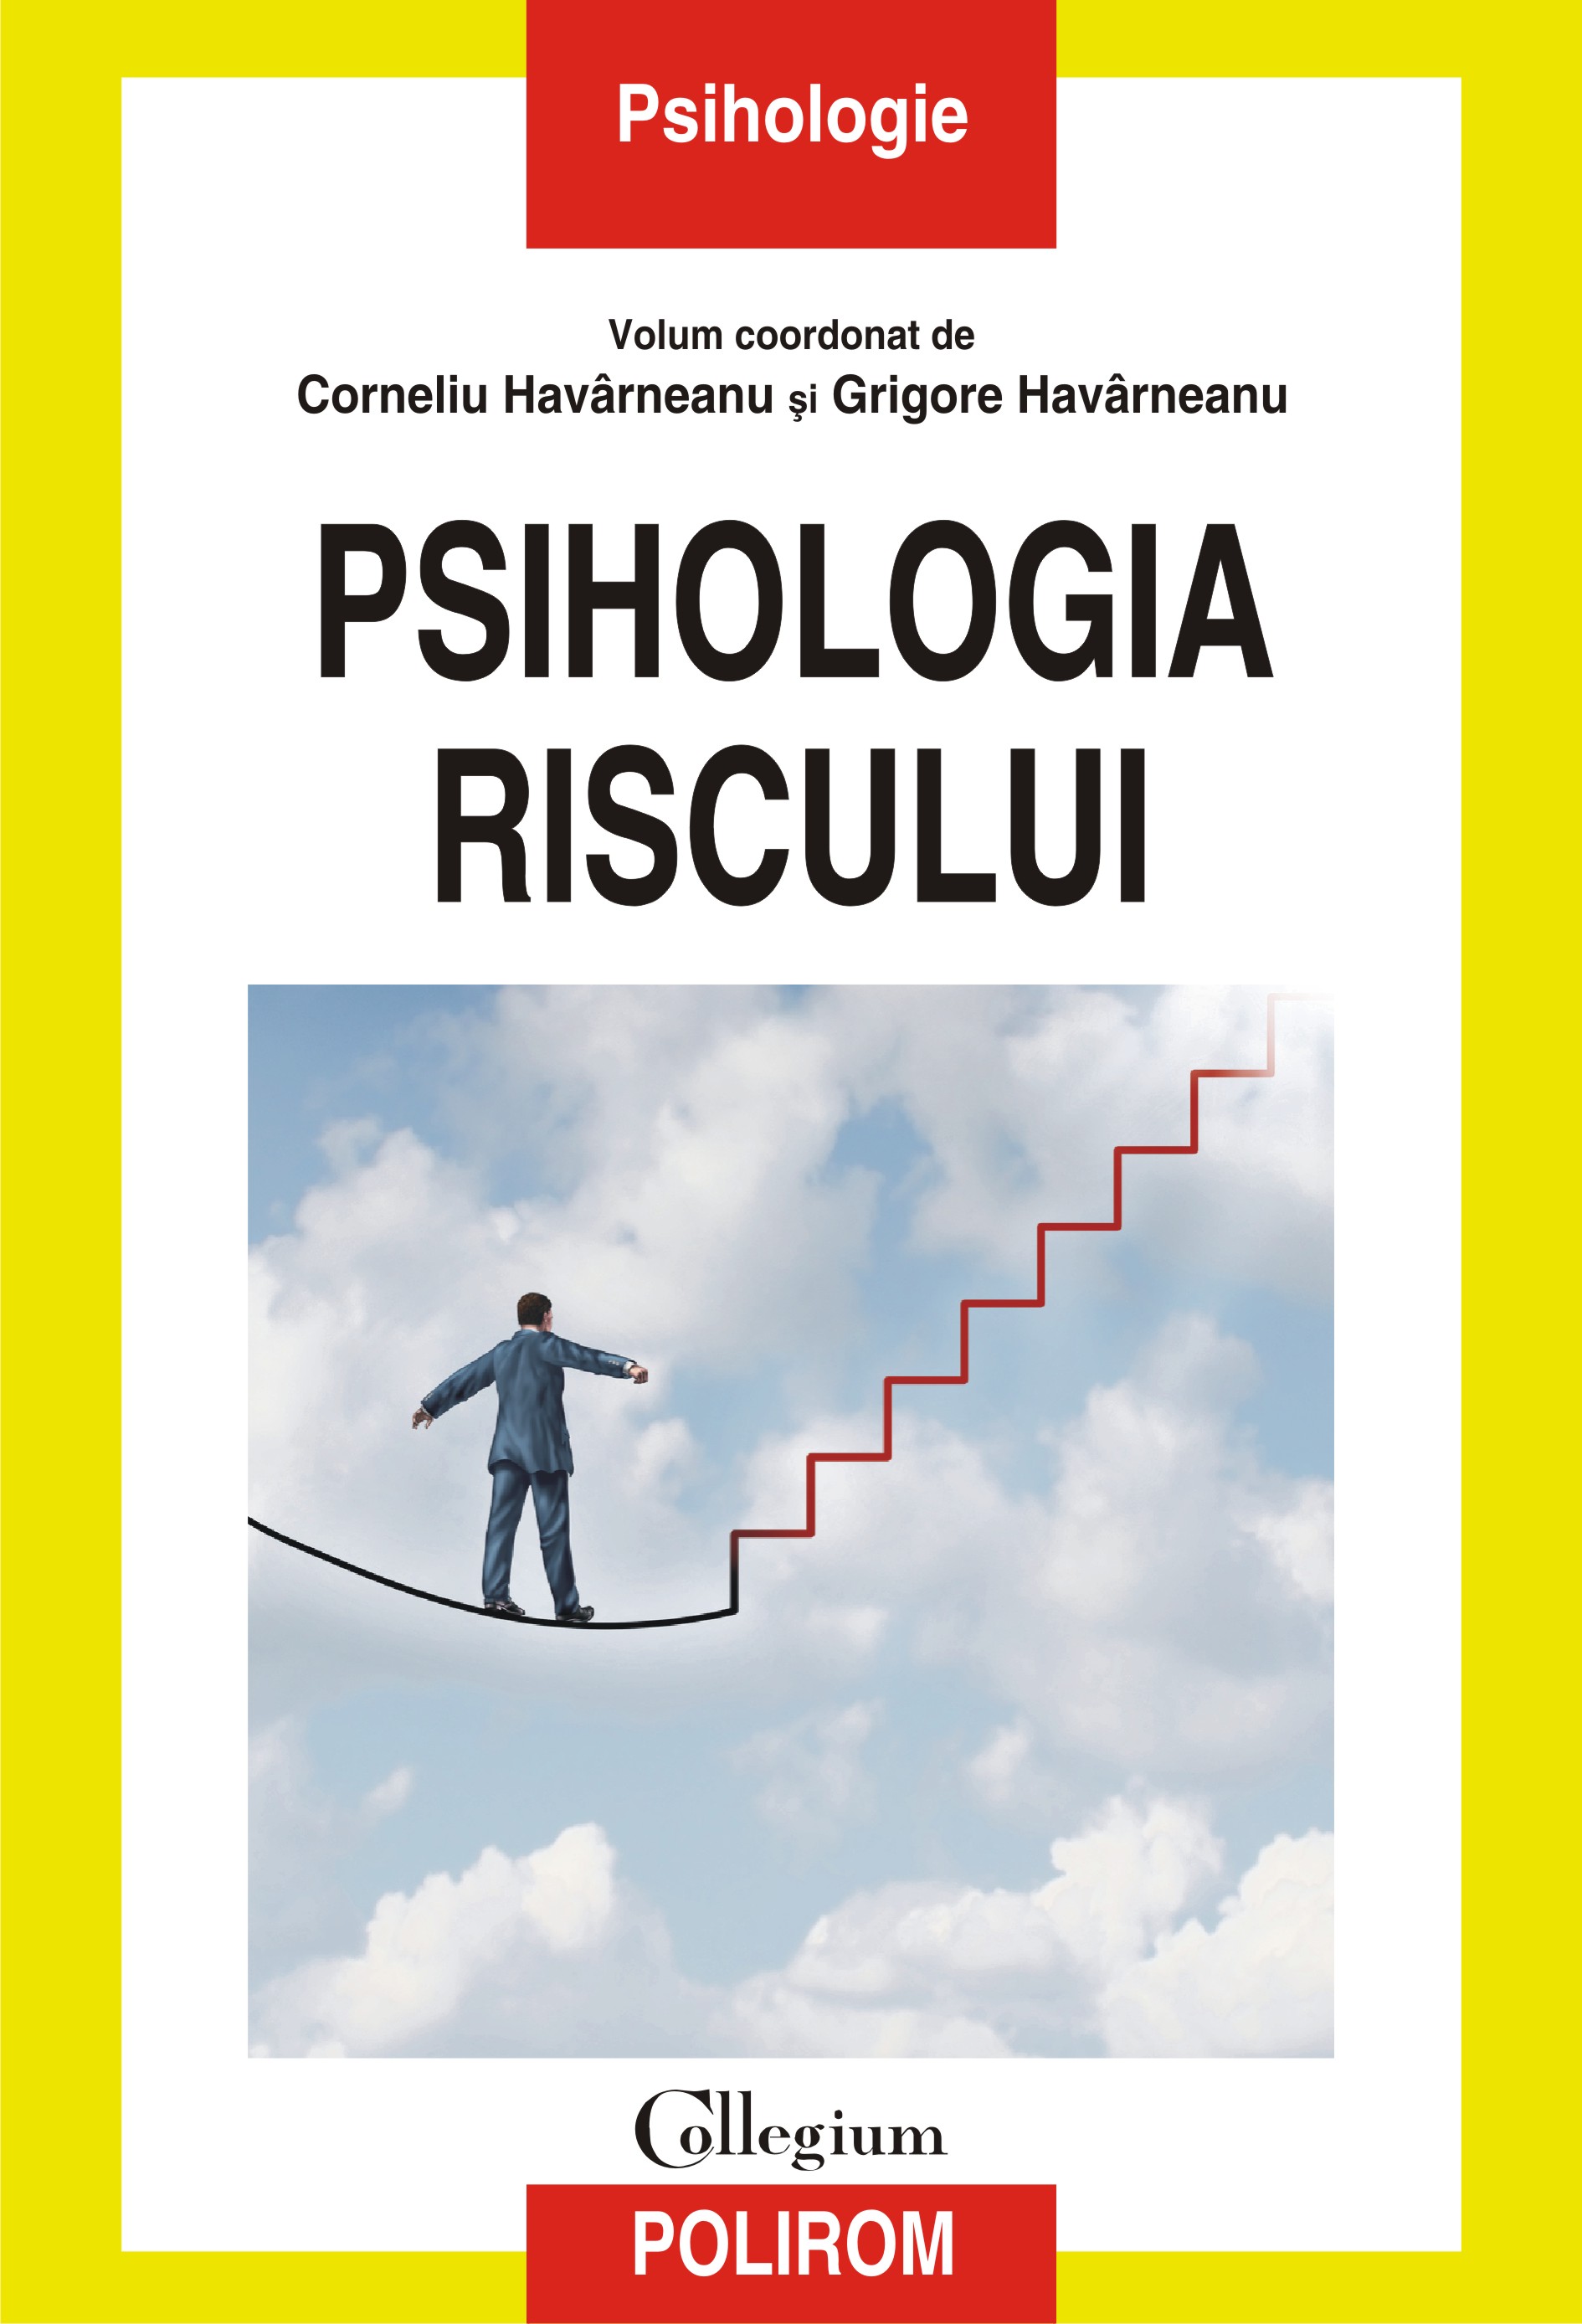 eBook Psihologia riscului - Corneliu Havarneanu (coord.)